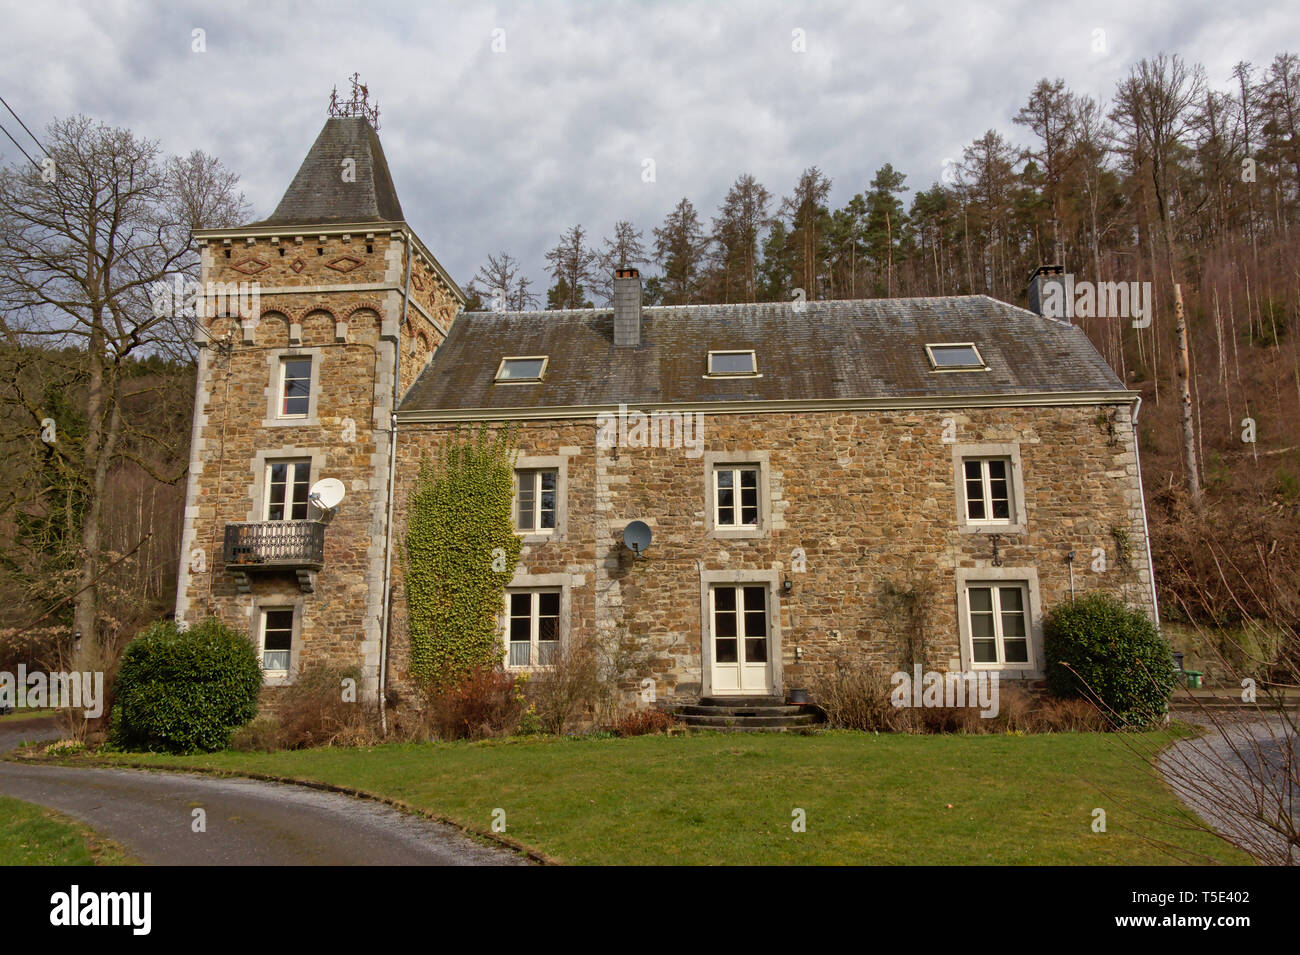 Hôtel particulier traditionnel en pierre naturelle dans une forêt d'Ardennes, Liège, Belgiums Banque D'Images